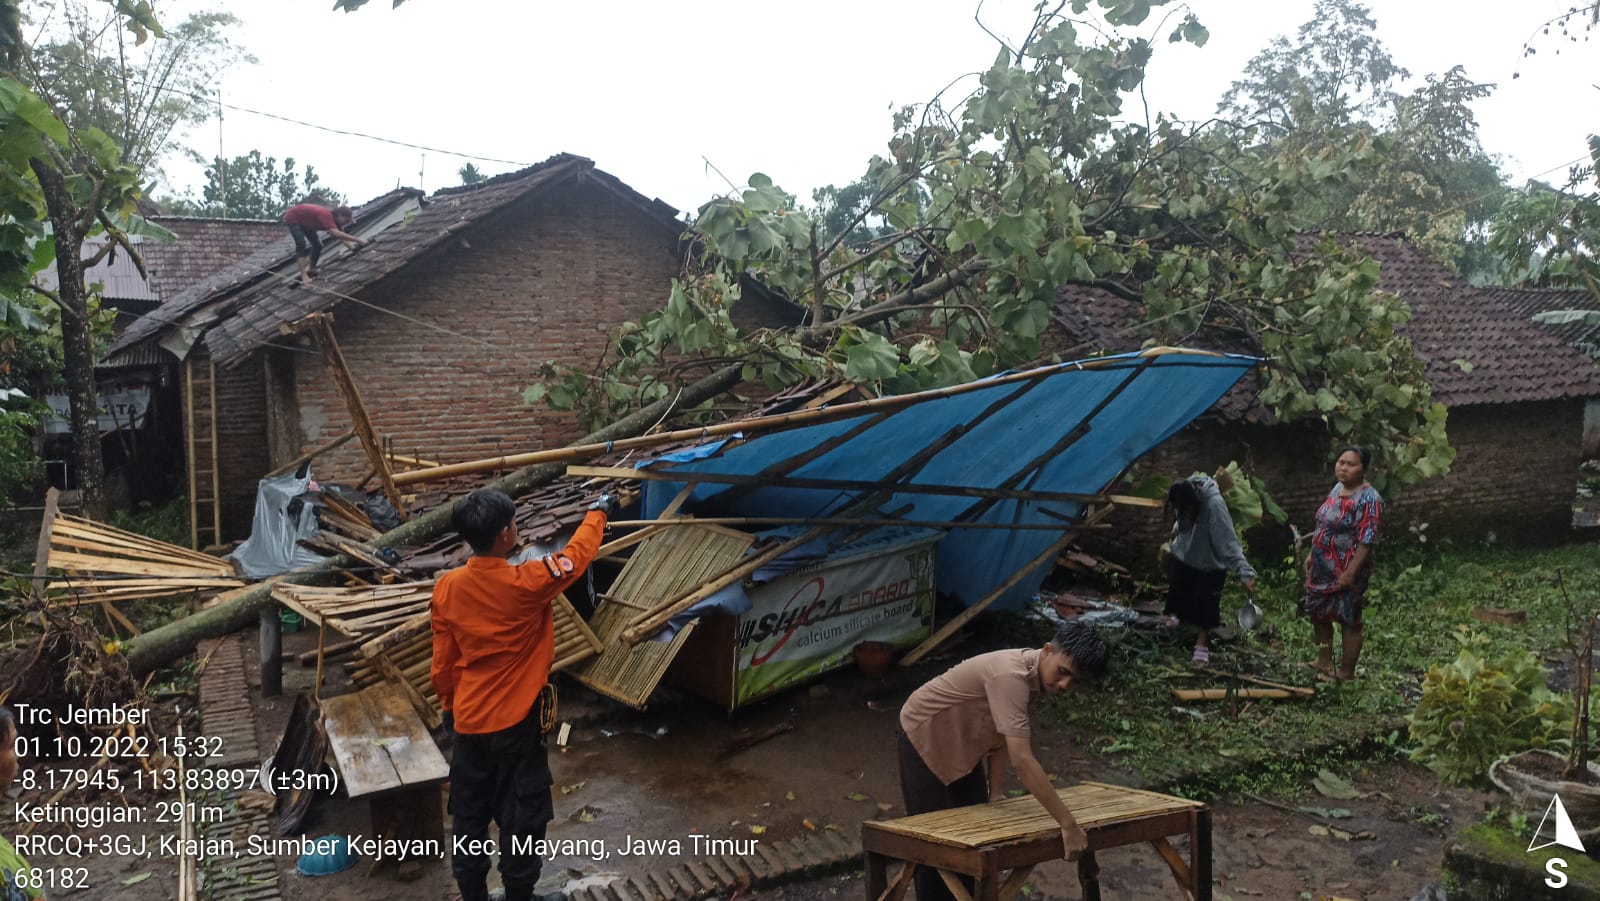 Belasan rumah di Dusun Krajan, Desa Sumberkejayan, Kecamatan Mayang, Kabupaten Jember rusak akibat diterjang angin kencang,